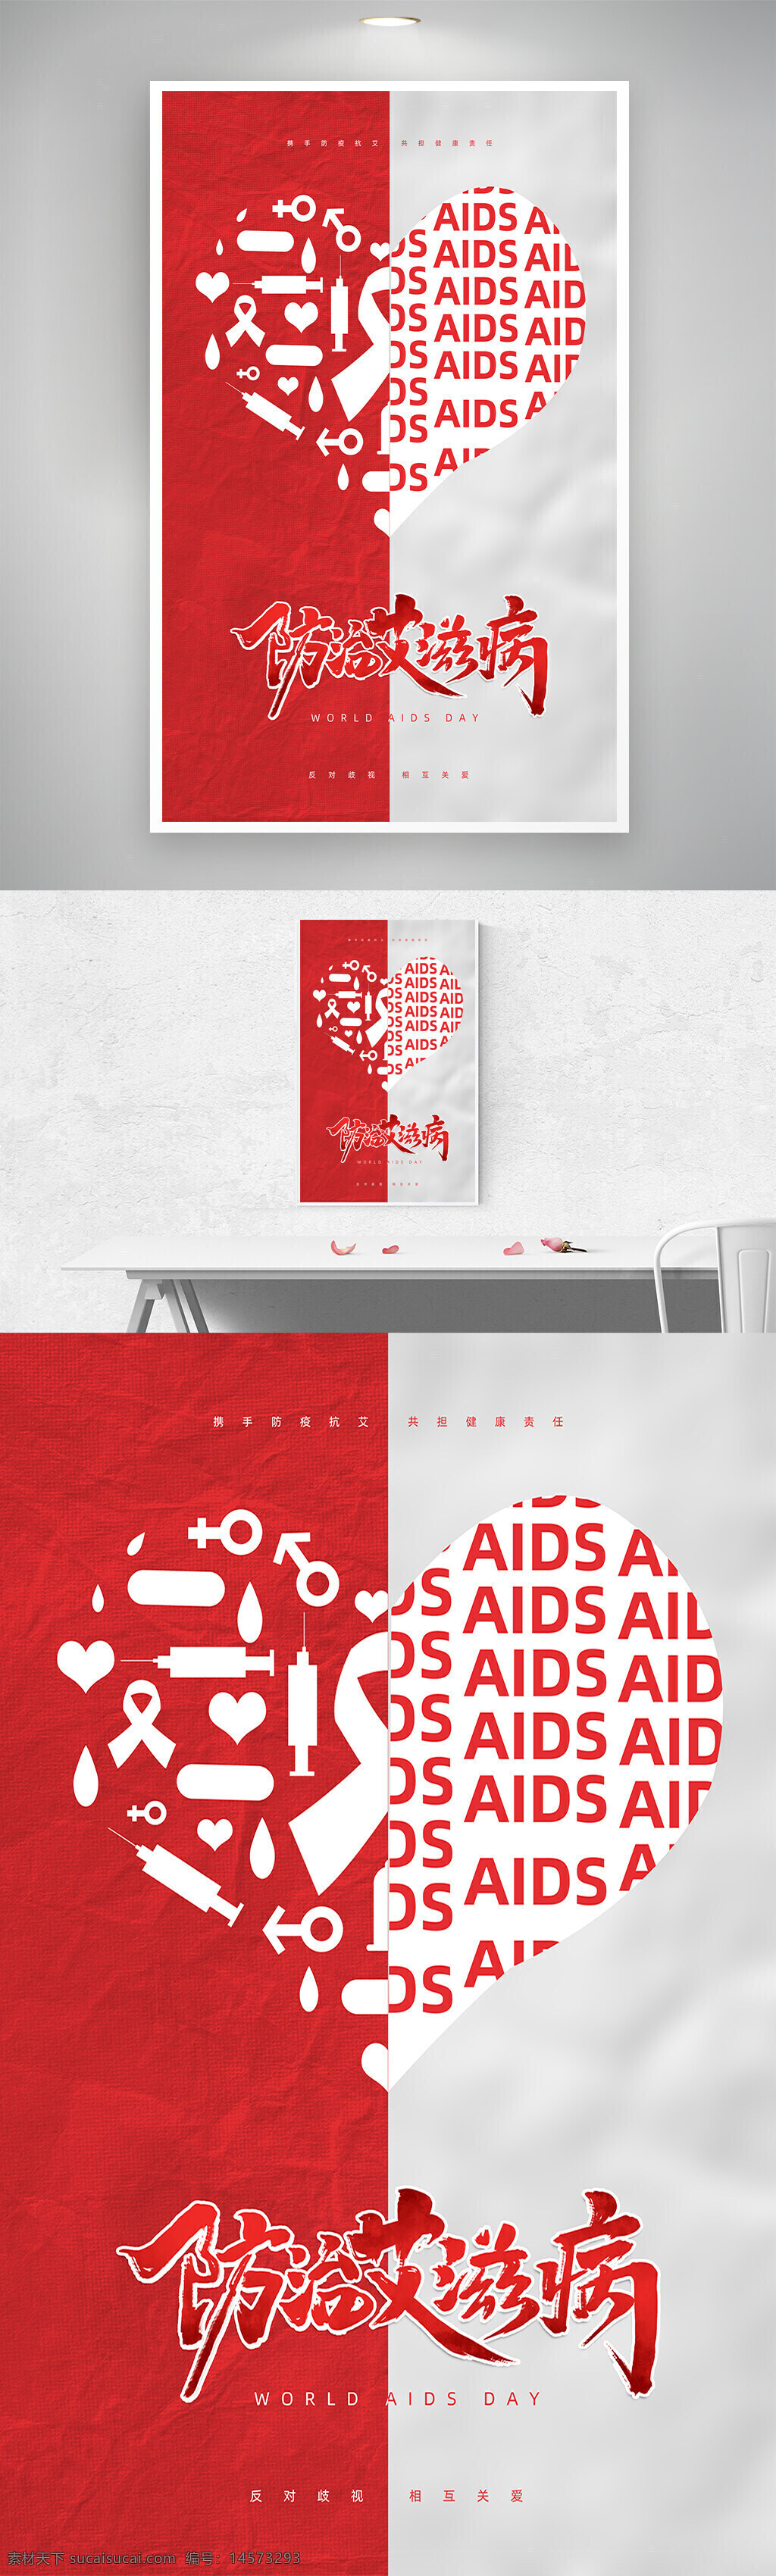 2021年 世界艾滋病日 生命至上 终结艾滋 健康平等 艾滋病海报 艾滋病日宣传 艾滋病展板 红丝带 艾滋病标语 艾滋病口号 艾滋病日 艾滋病日海报 立体字 健康教育栏 艾滋病策划